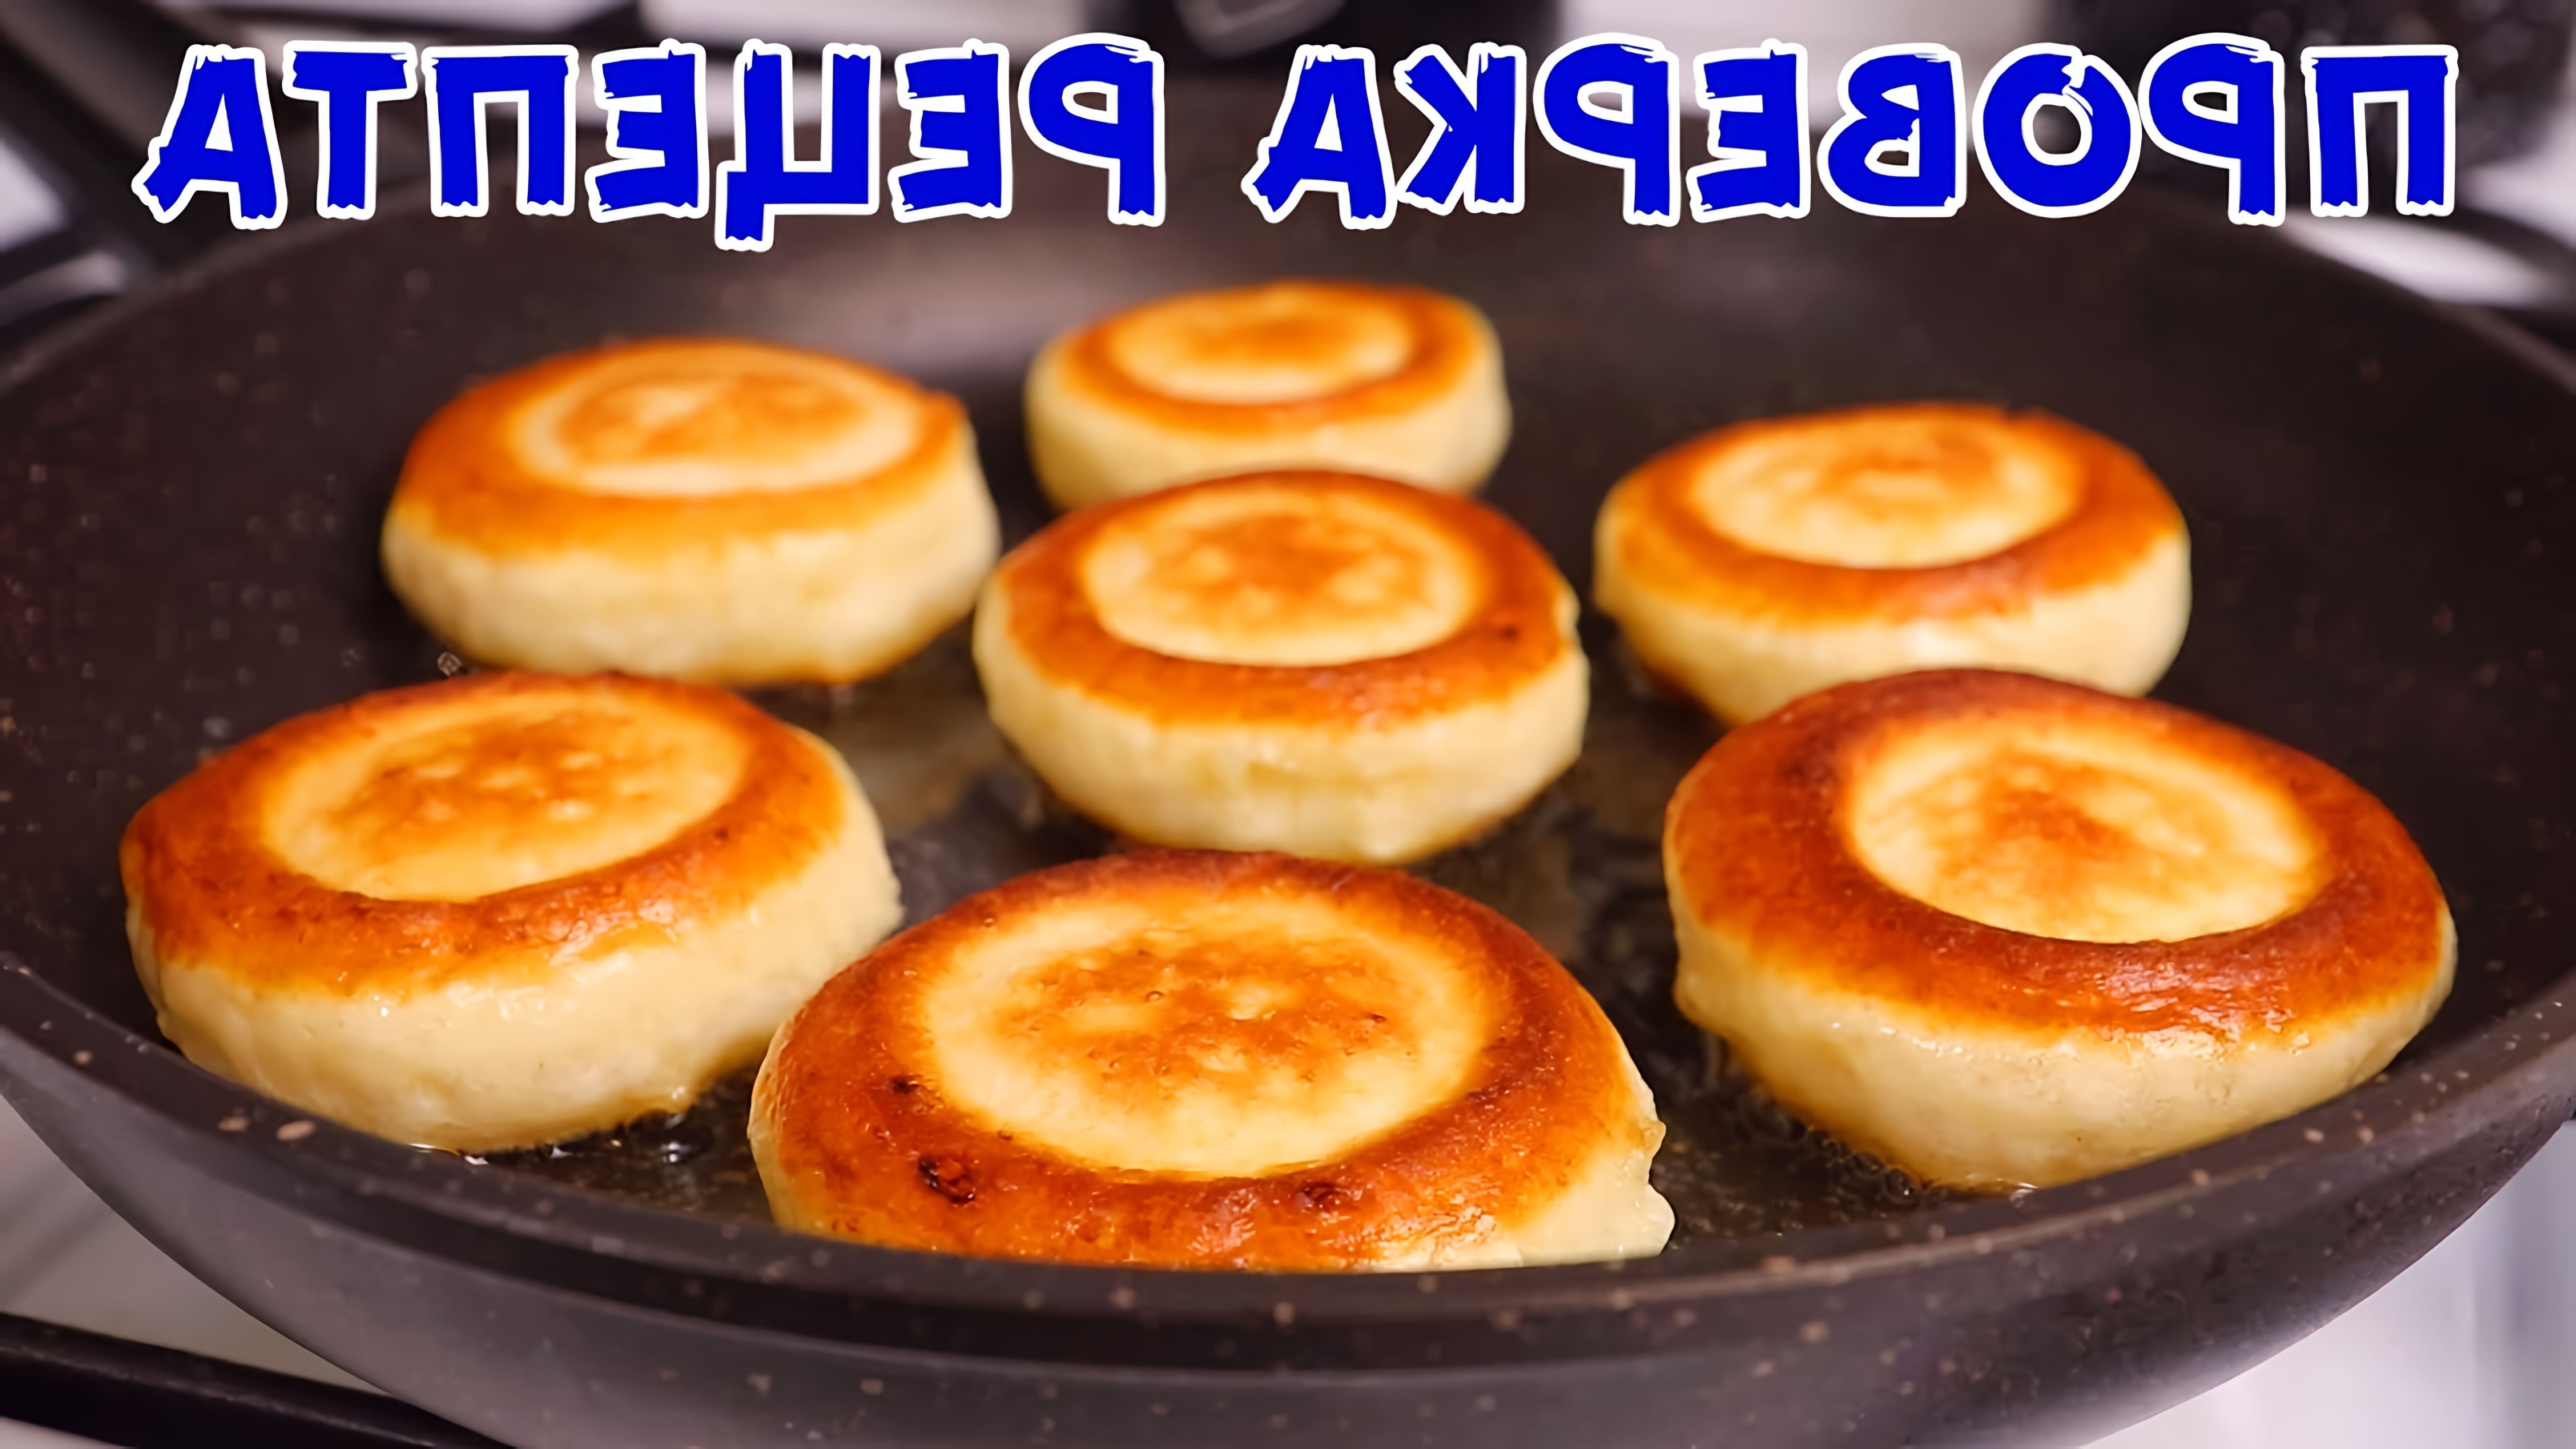 В этом видео демонстрируется рецепт приготовления творожных оладий, которые по вкусу напоминают пончики